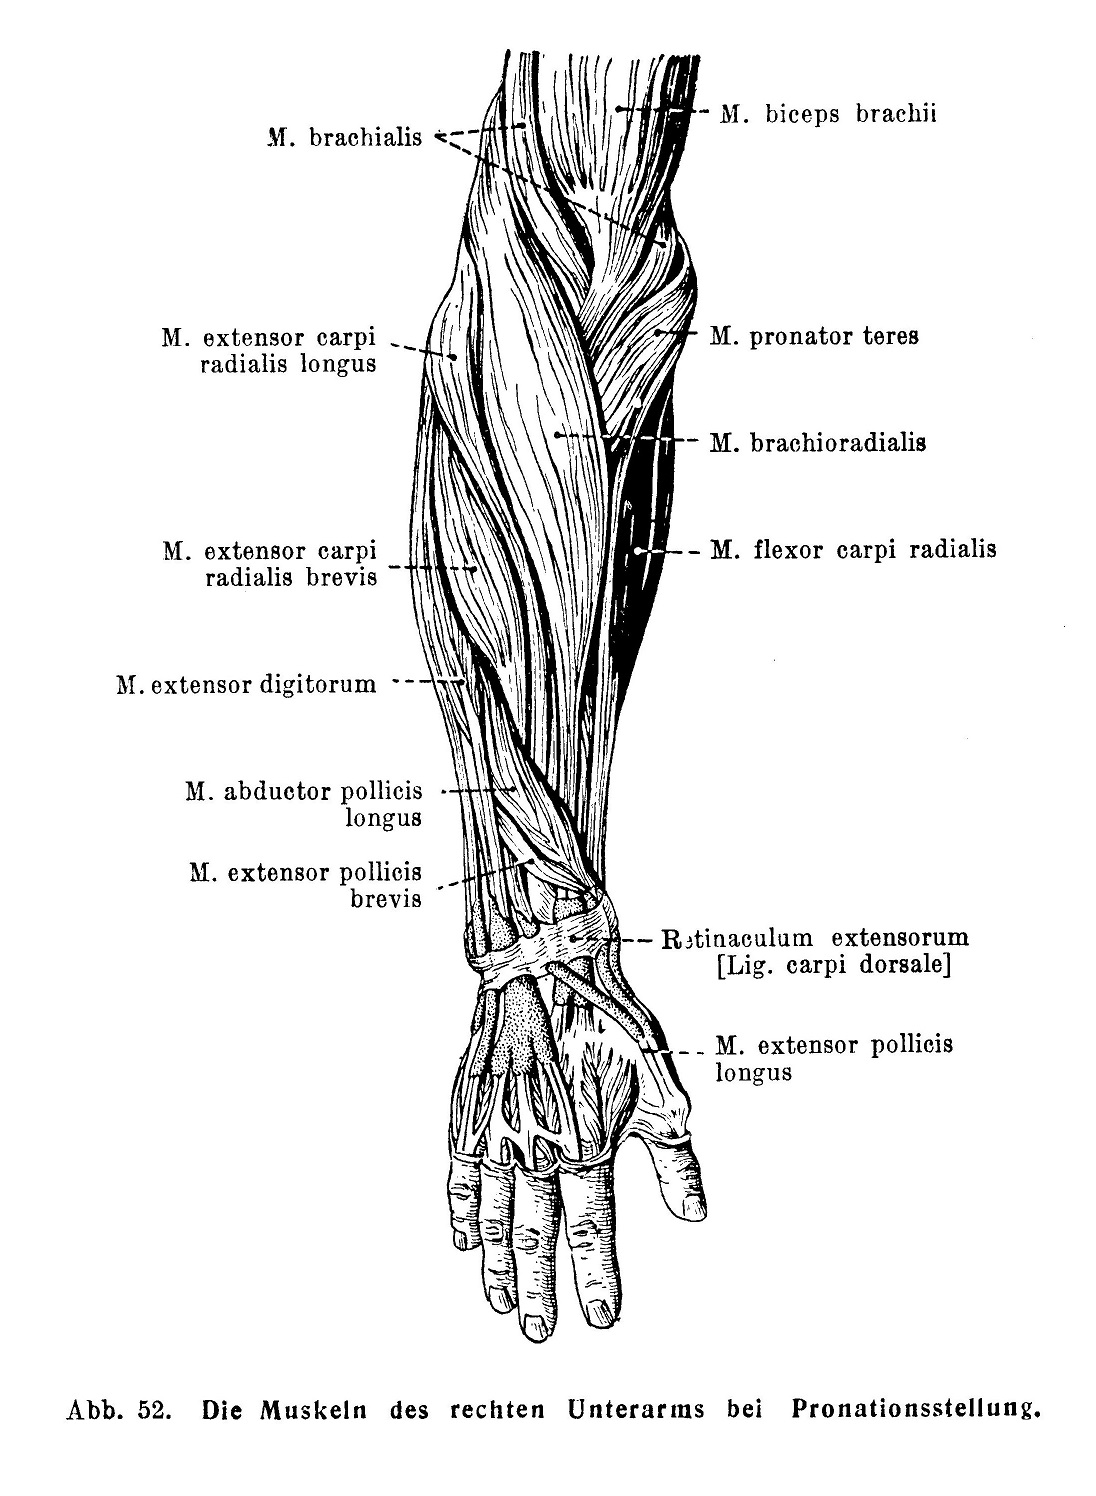 Die Muskeln des rechten Unterarms bei Pronationsstellung